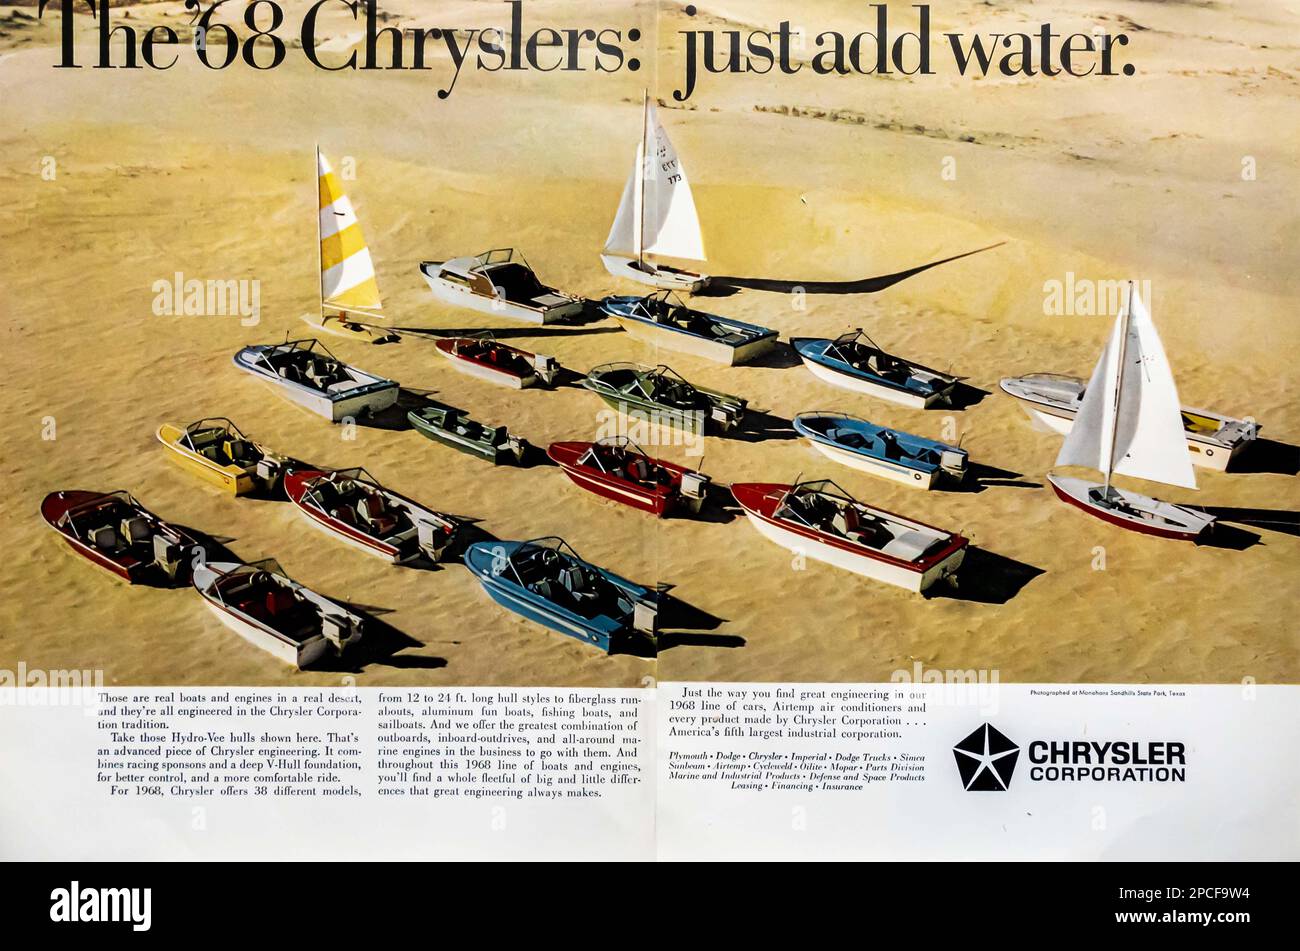 '68 Chrysler pubblicità in una rivista NatGeo luglio 1968 - basta aggiungere la campagna acqua Foto Stock